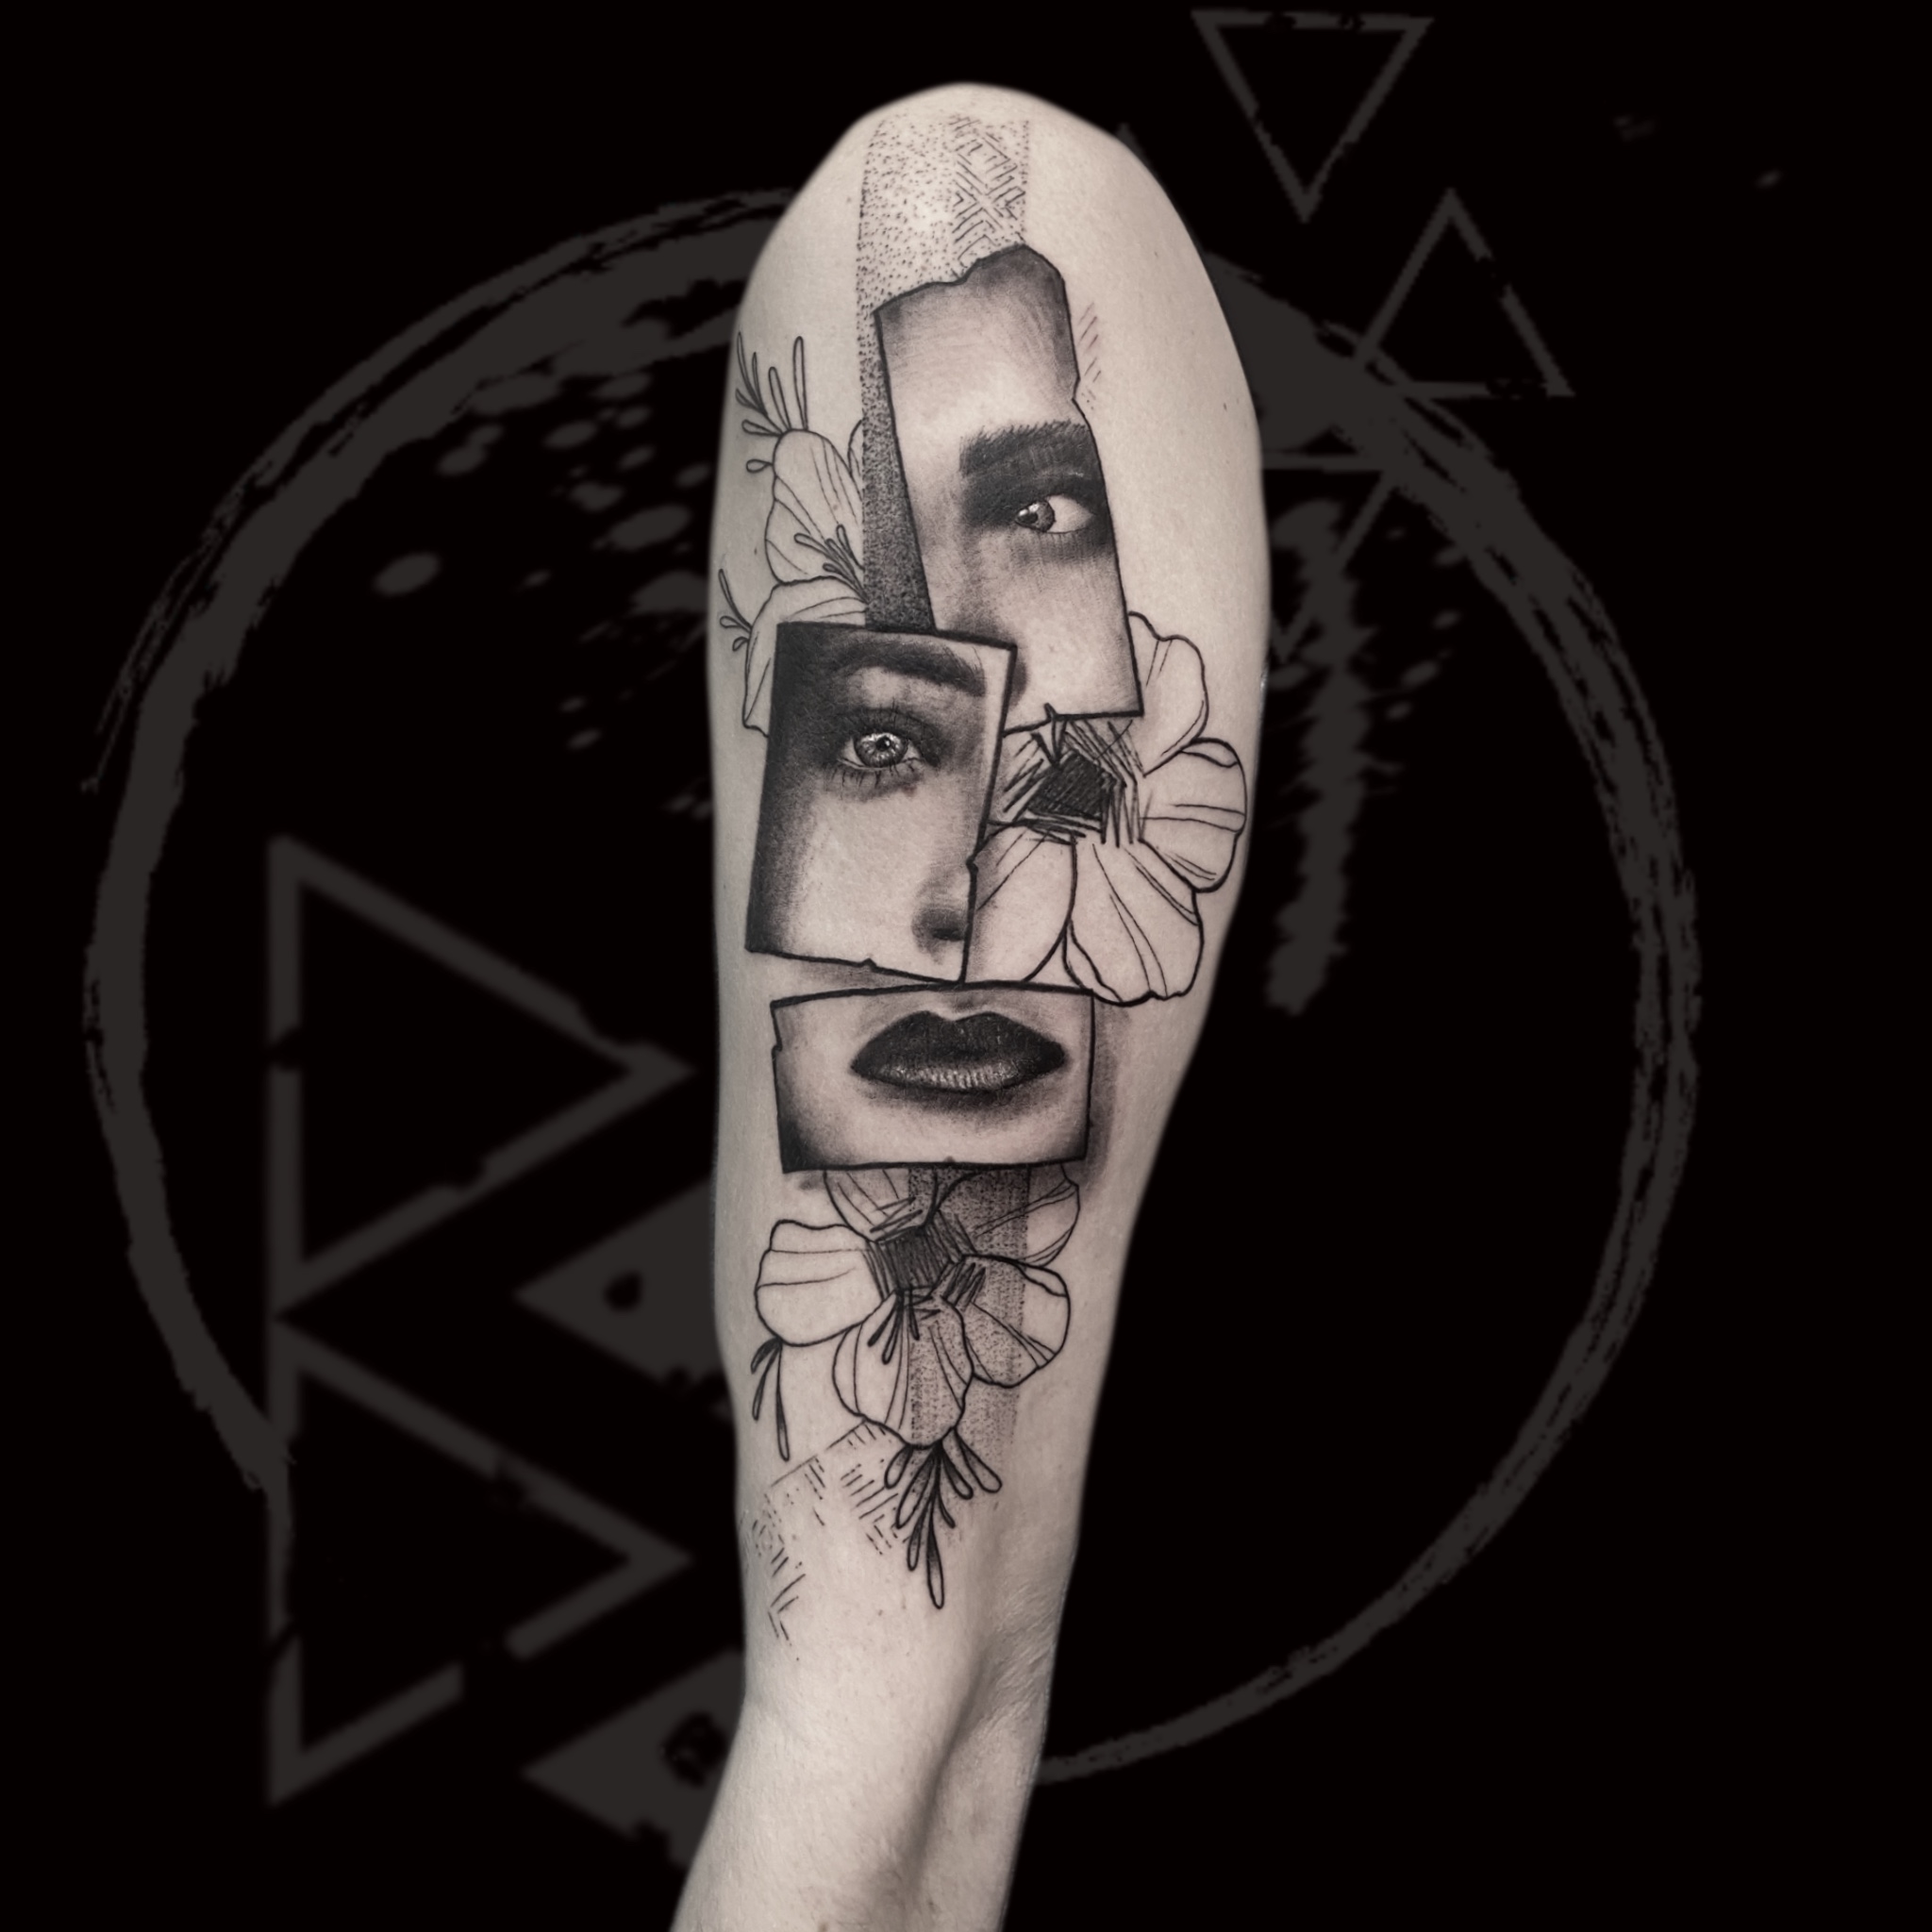 Modern Realism Tattoo, Black And Grey Tattoo, Contemporary Tattoo, Amsterdam Tattoo, Portrait Tattoo